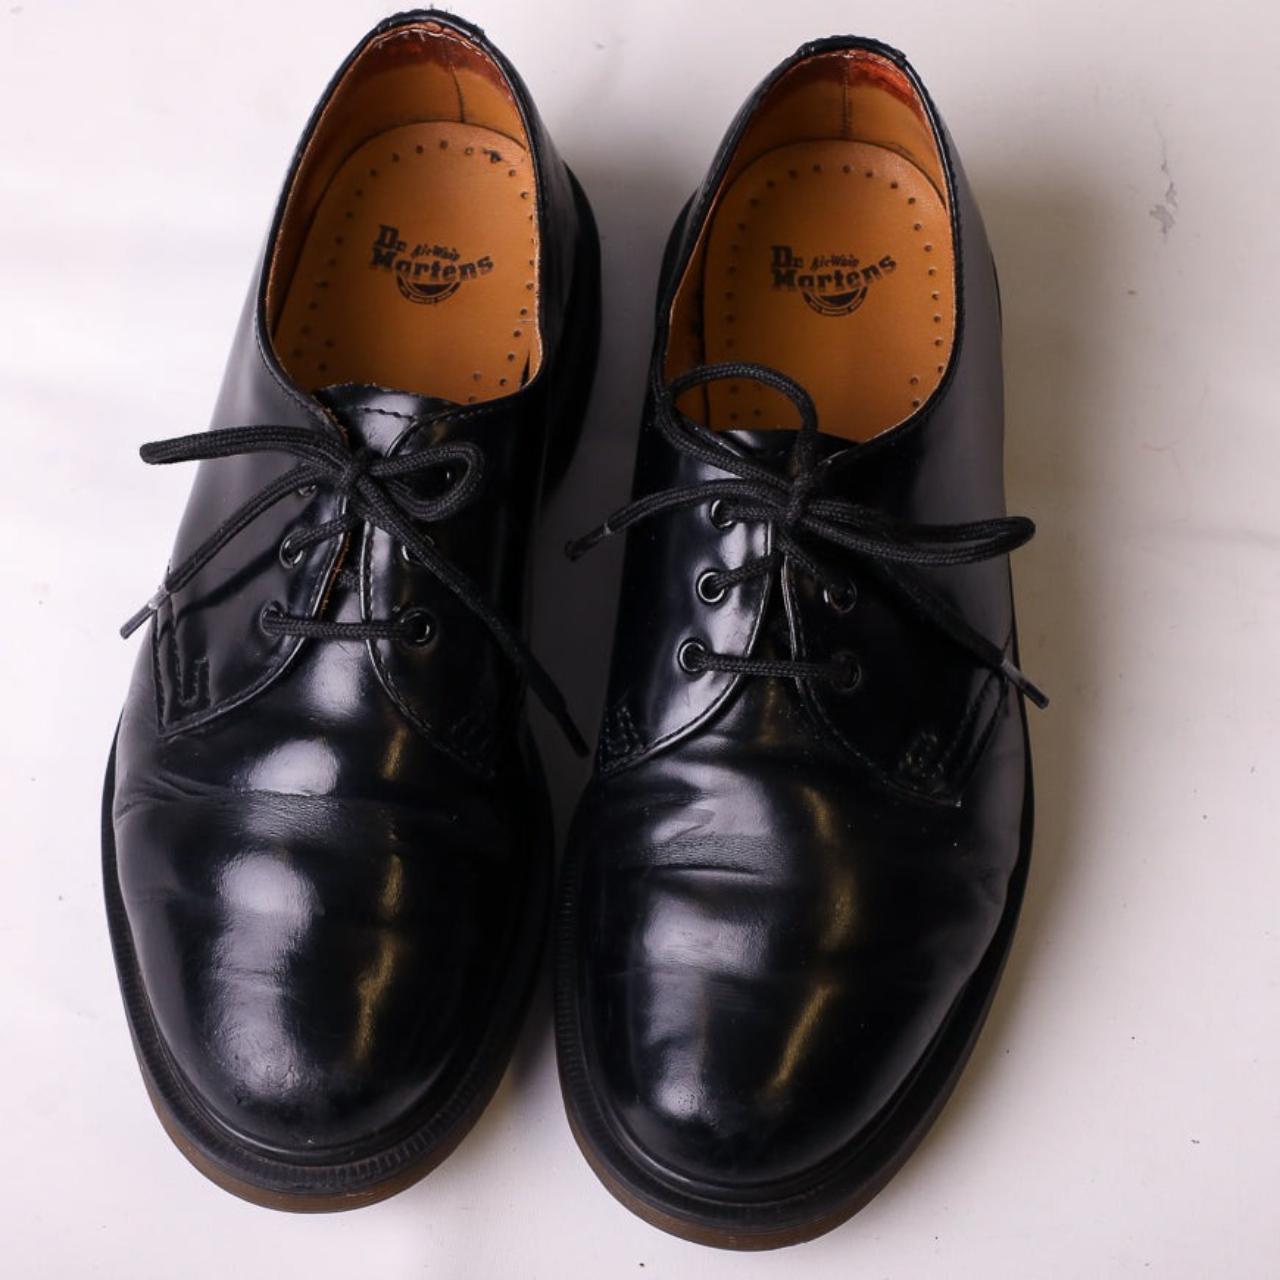 Vintage Dr Martens Leather Shoes in Black Patent•... - Depop